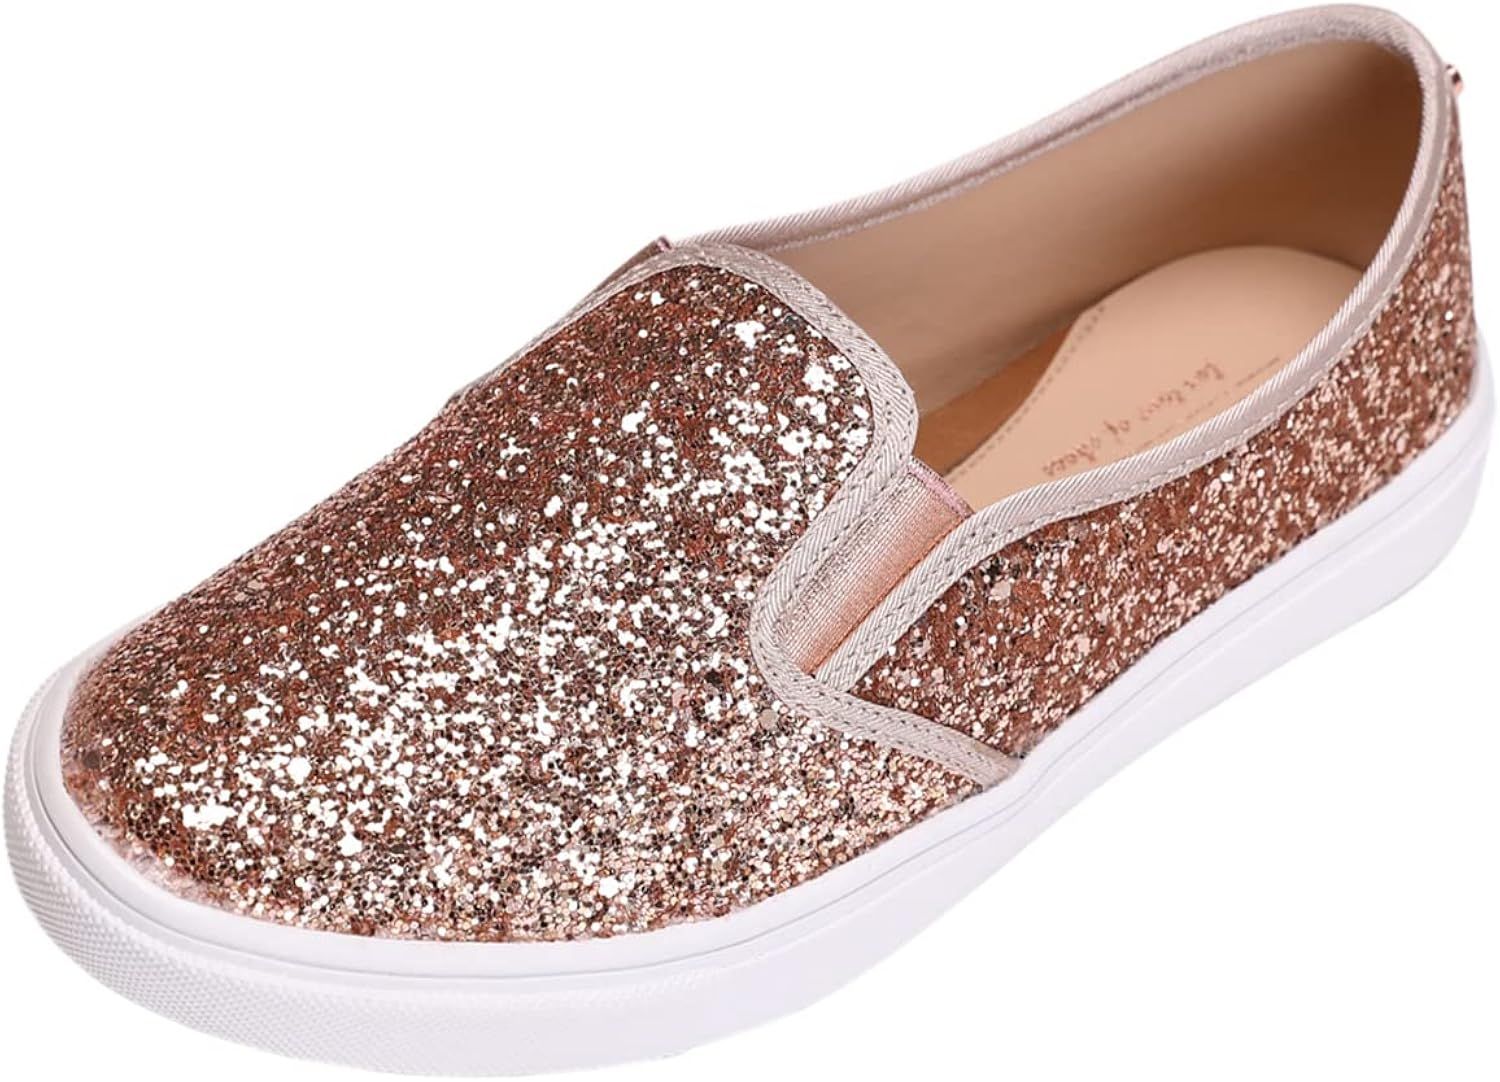 FEVERSOLE Women's Fashion Slip-On Sneaker Casual Flat Loafers | Amazon (US)